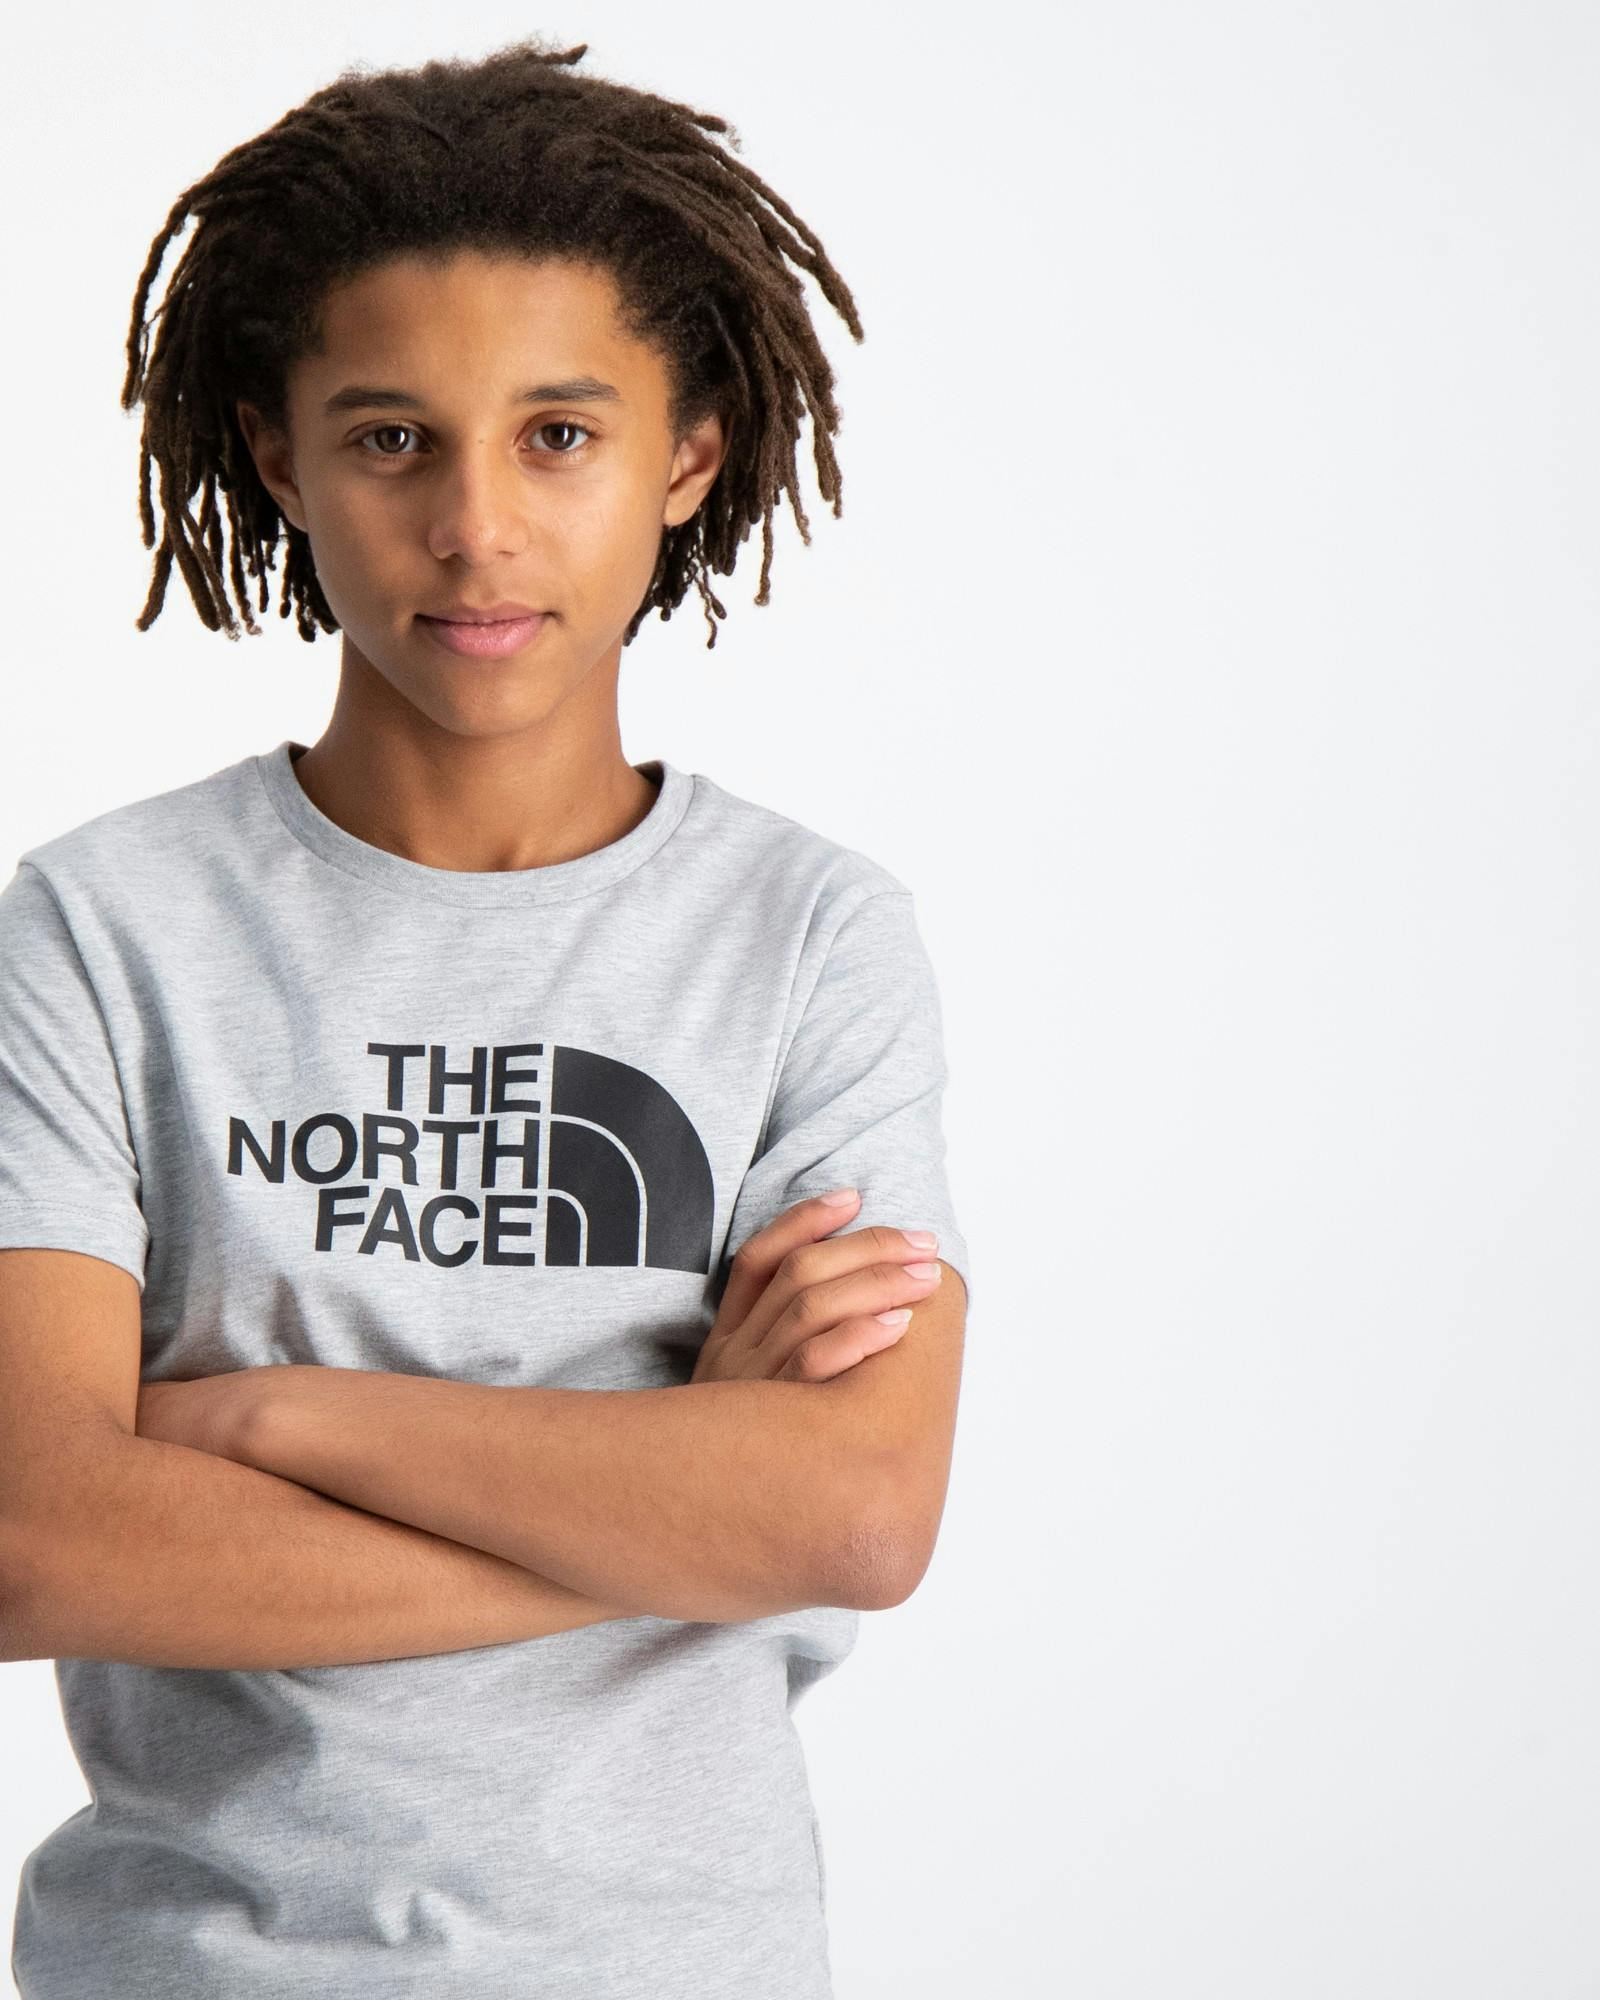 The North Face T-Shirts für Kinder und Jugendliche | Kids Brand Store